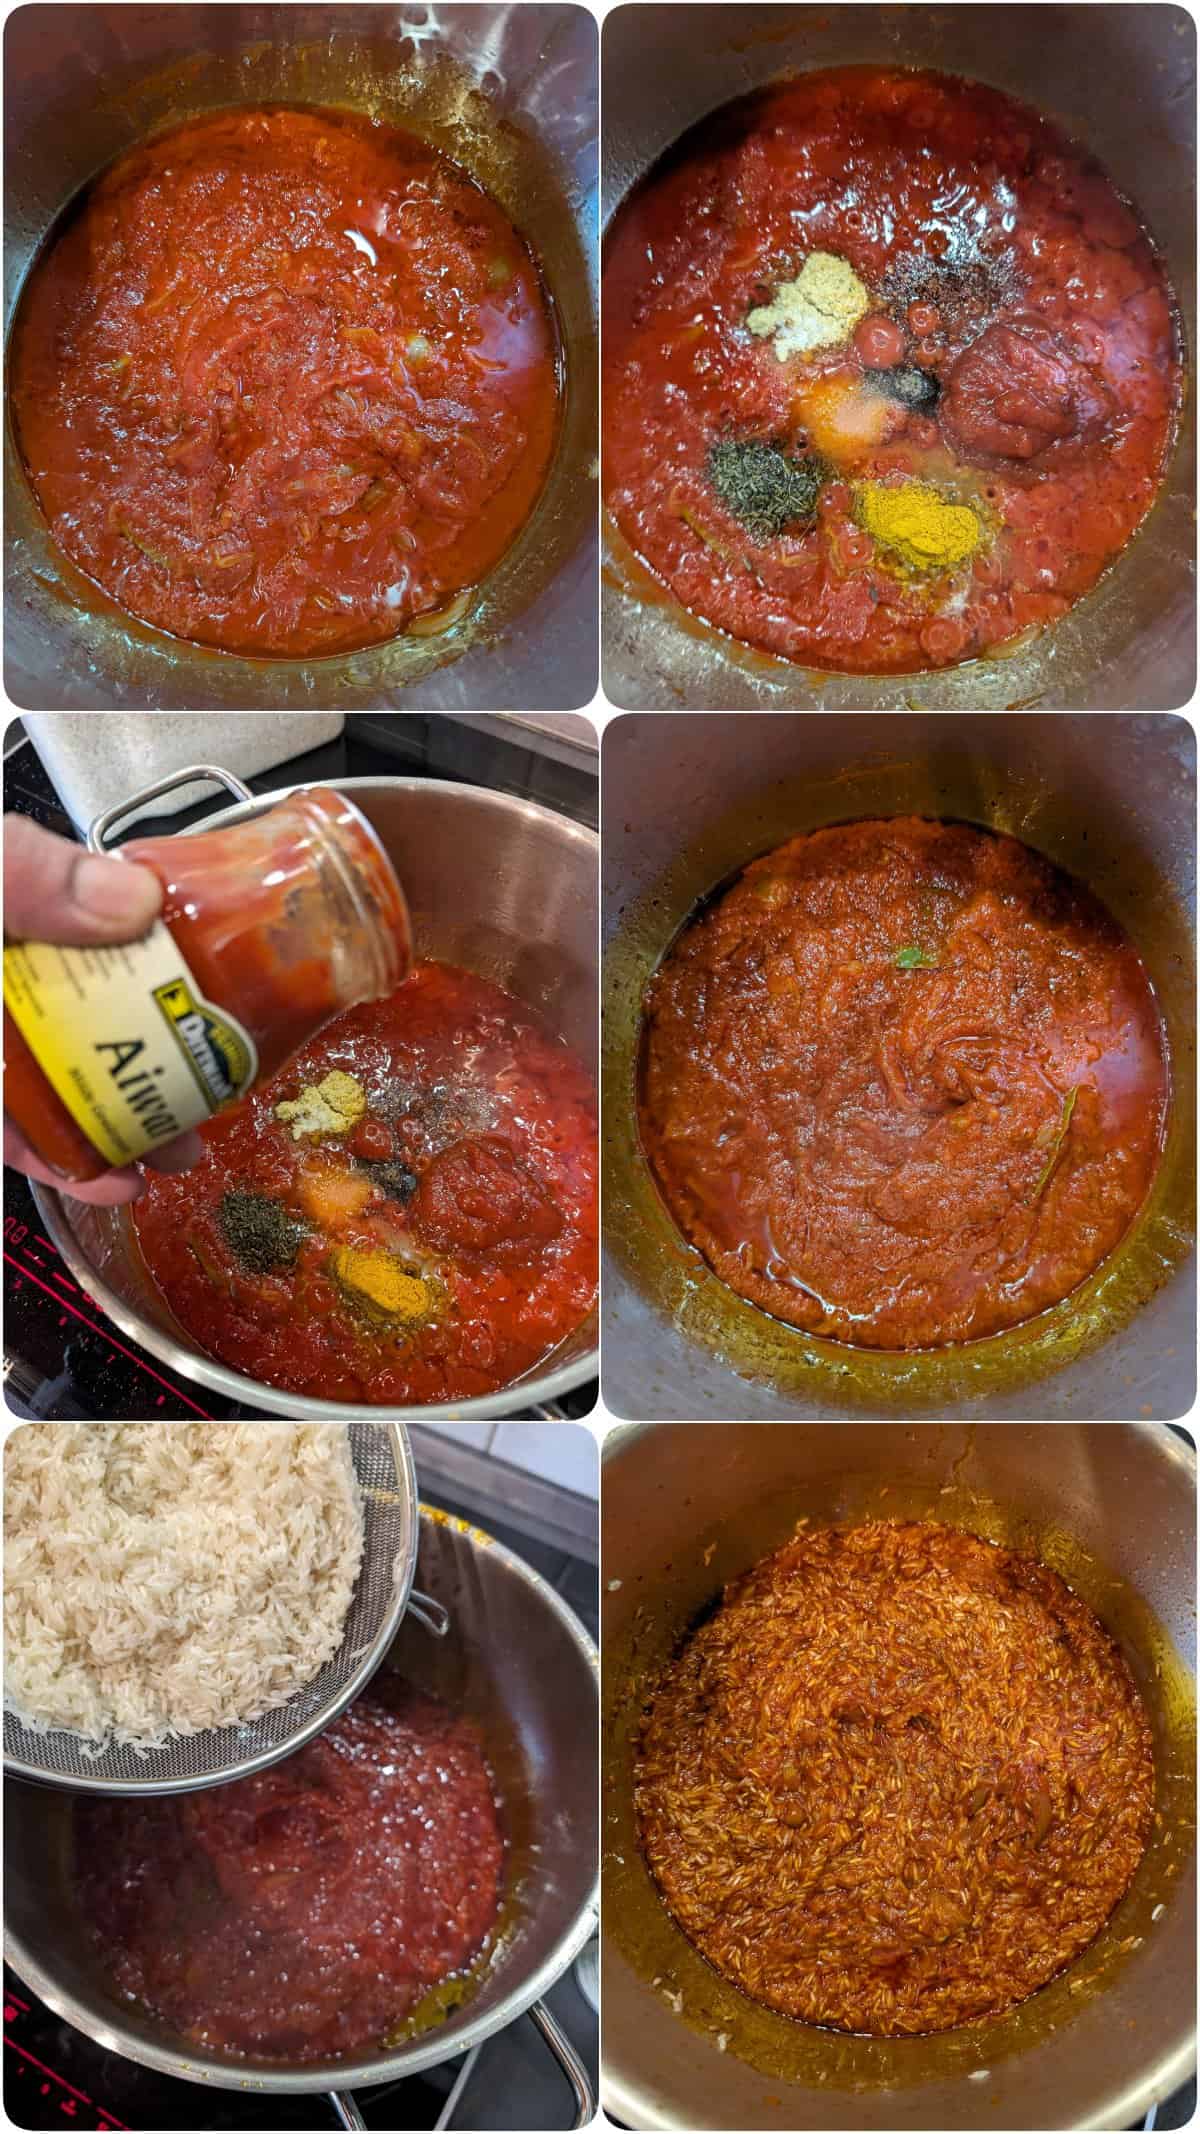 Eine Collage der Zubereitungsschritte für Jollof Reis.